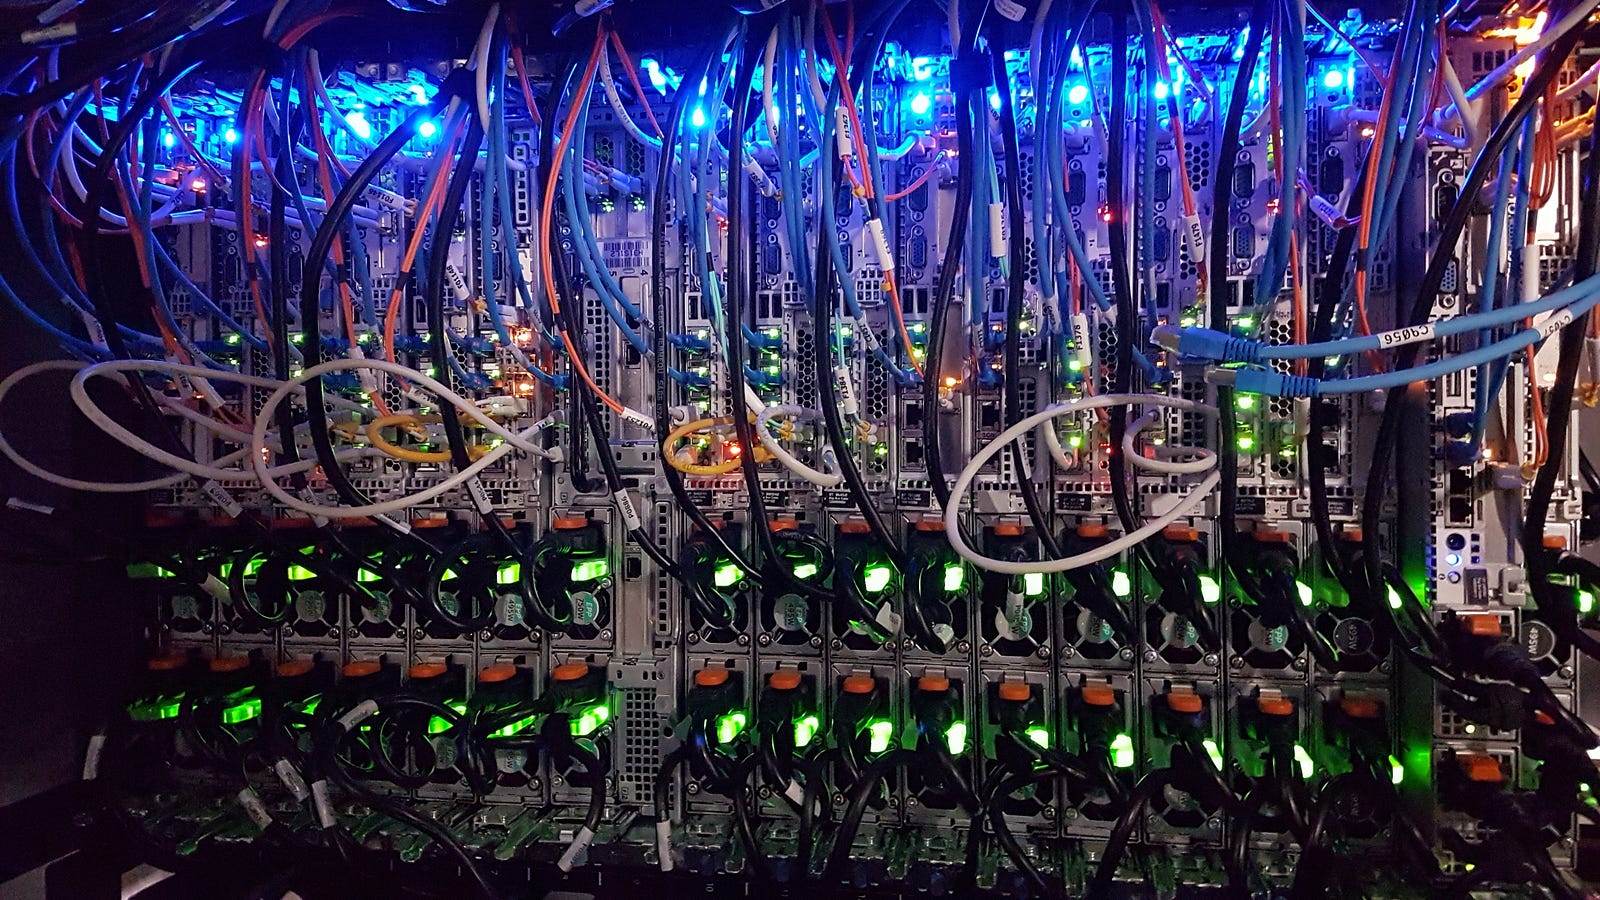 File verticali di server visti da dietro, con cavi e connessioni